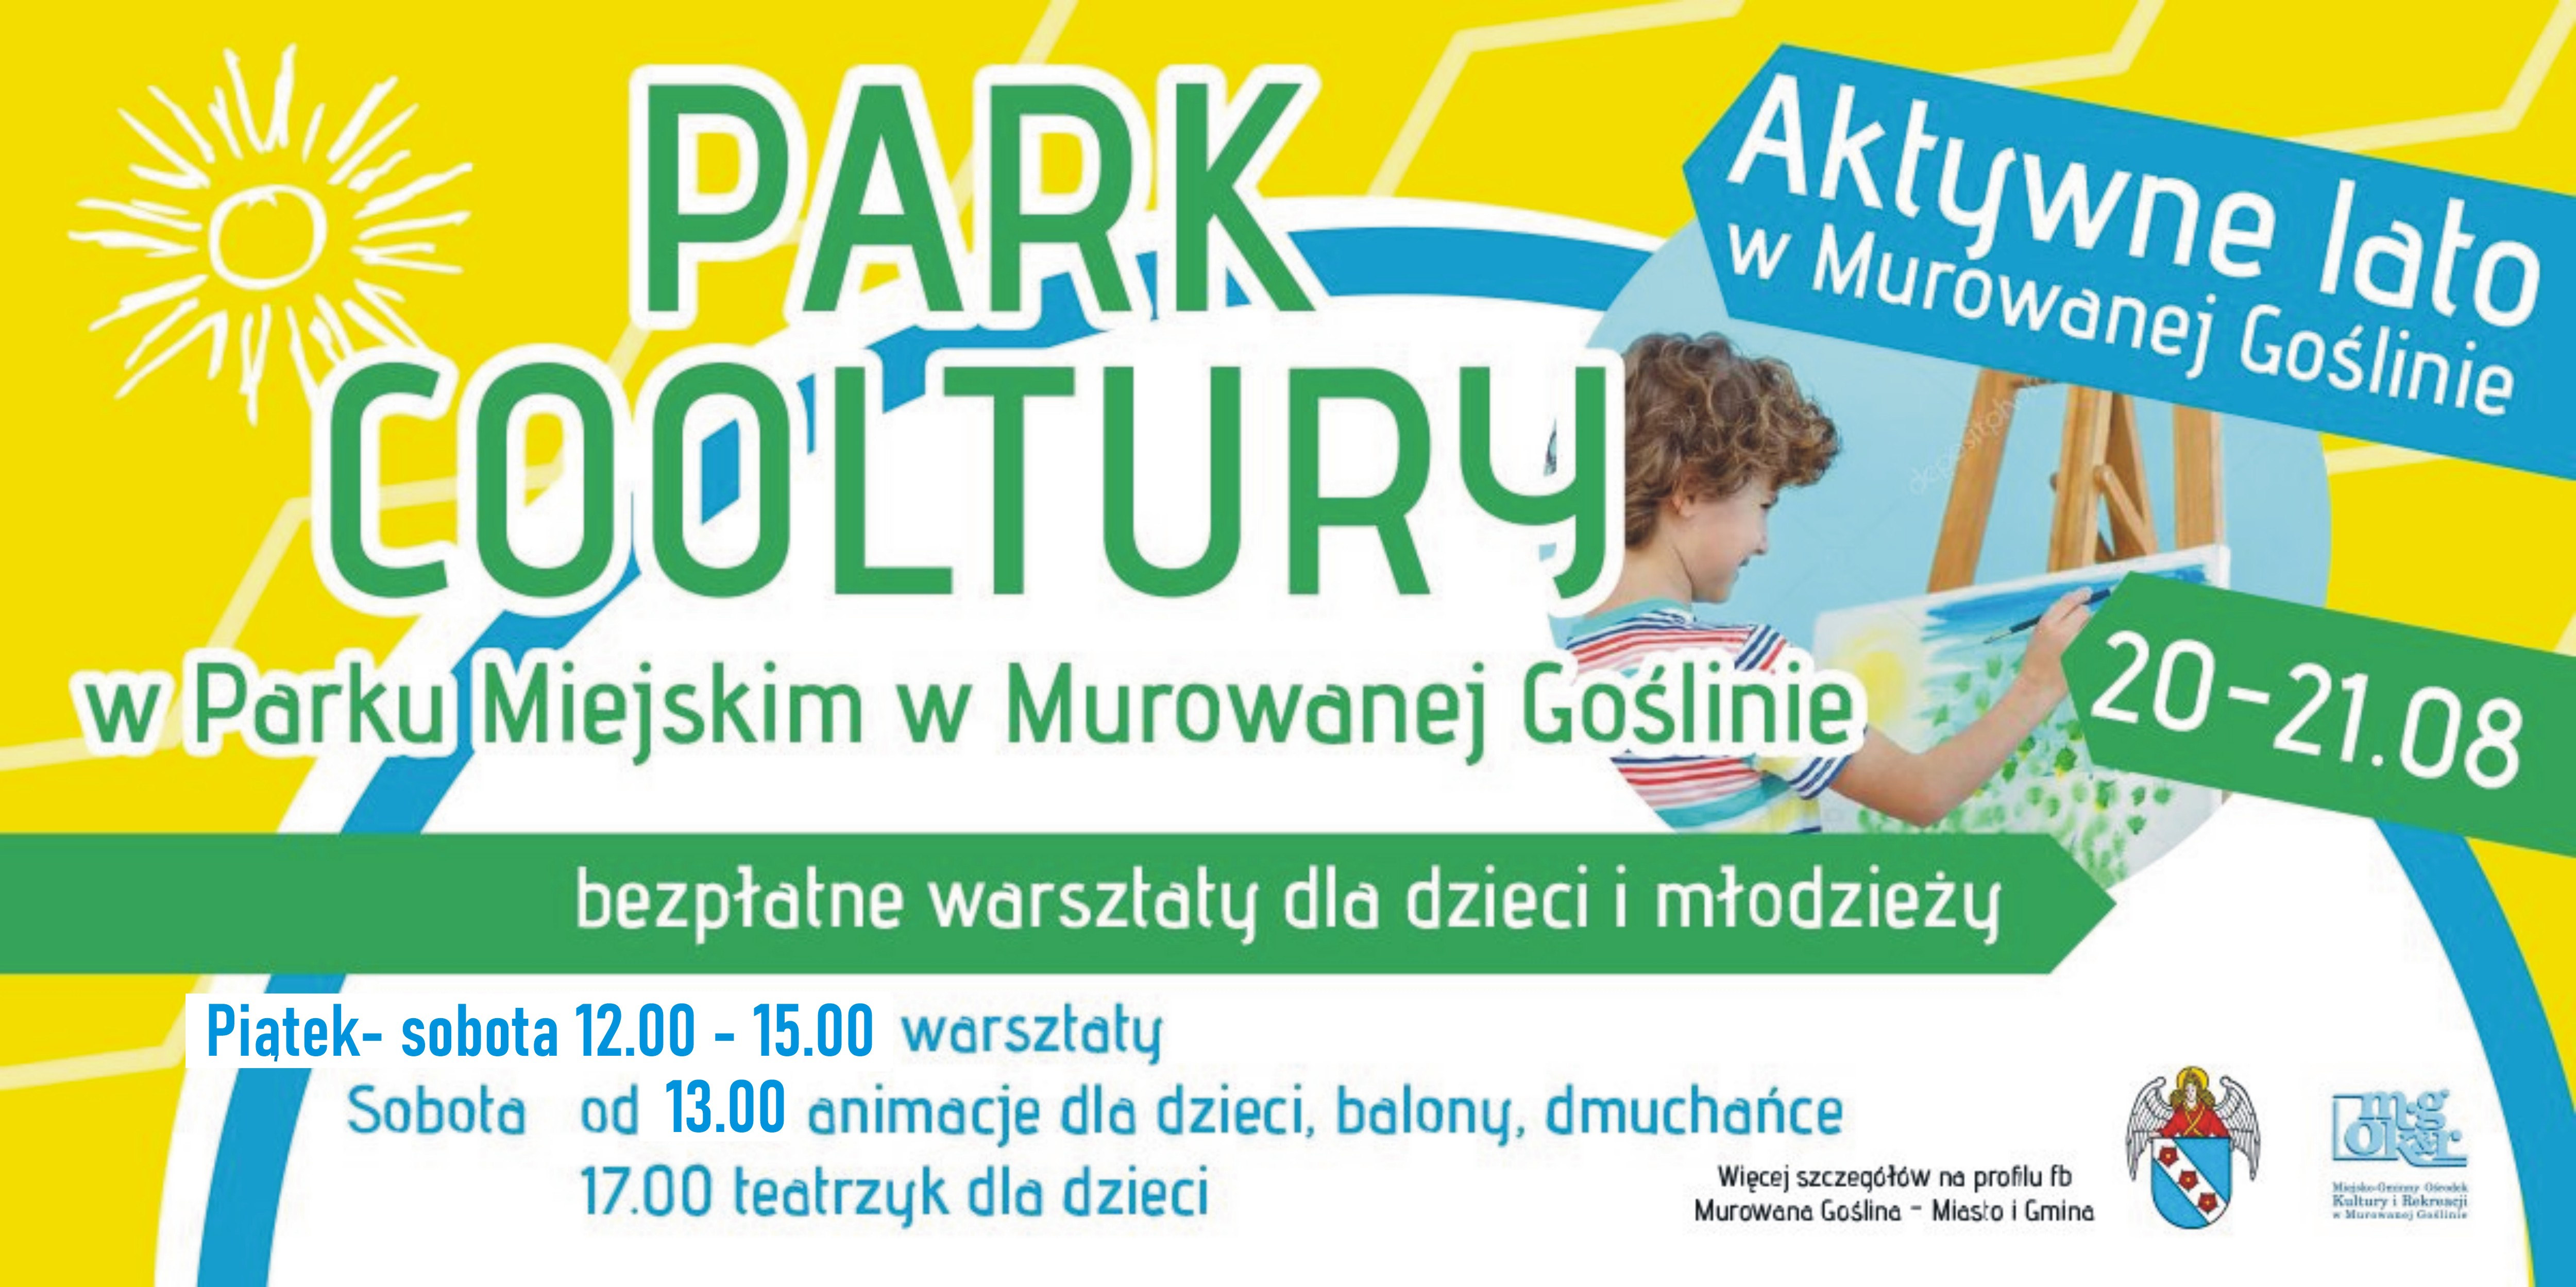 Park Cooltury, bezpłatne warsztaty dla dzieci i młodzieży